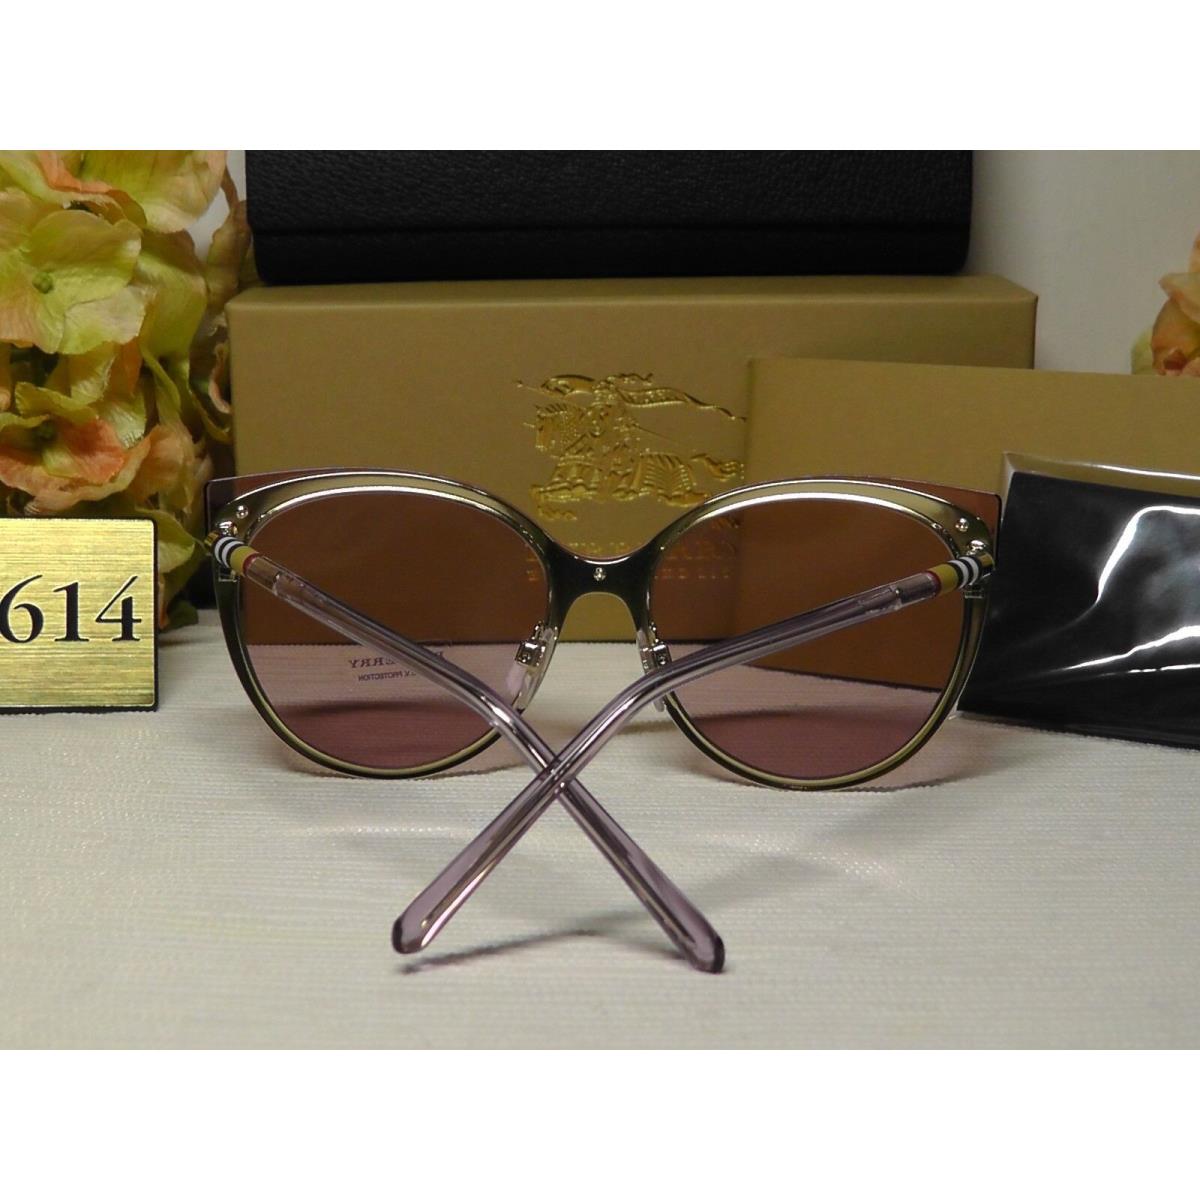 Burberry sunglasses  - Beige/Brushed/ Gold-tone Frame, Light Pink Lens 5